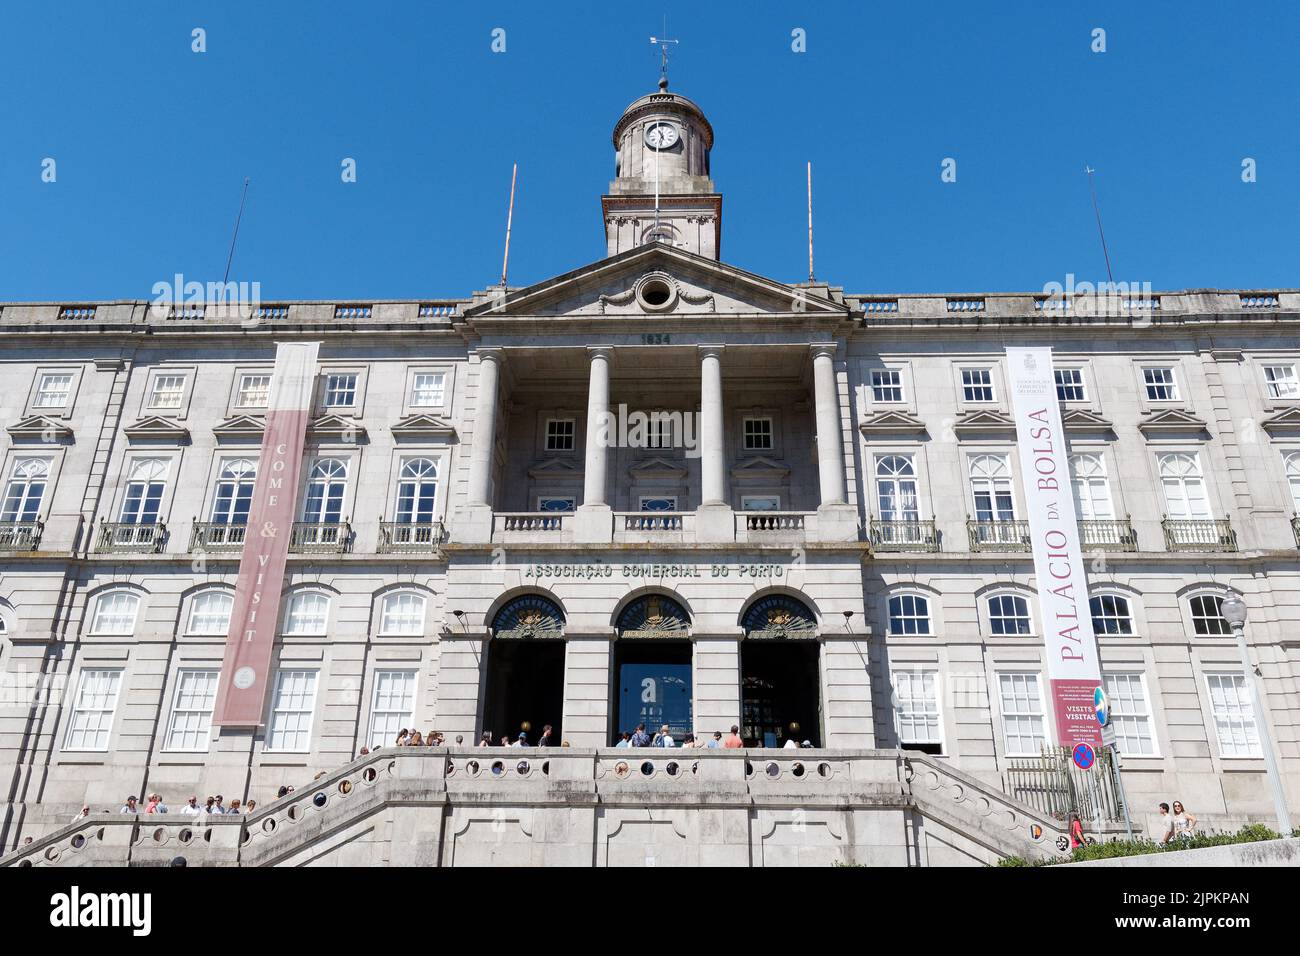 Bolsa Palace facciata, una vecchia borsa valori. Porto, Portogallo. Foto Stock